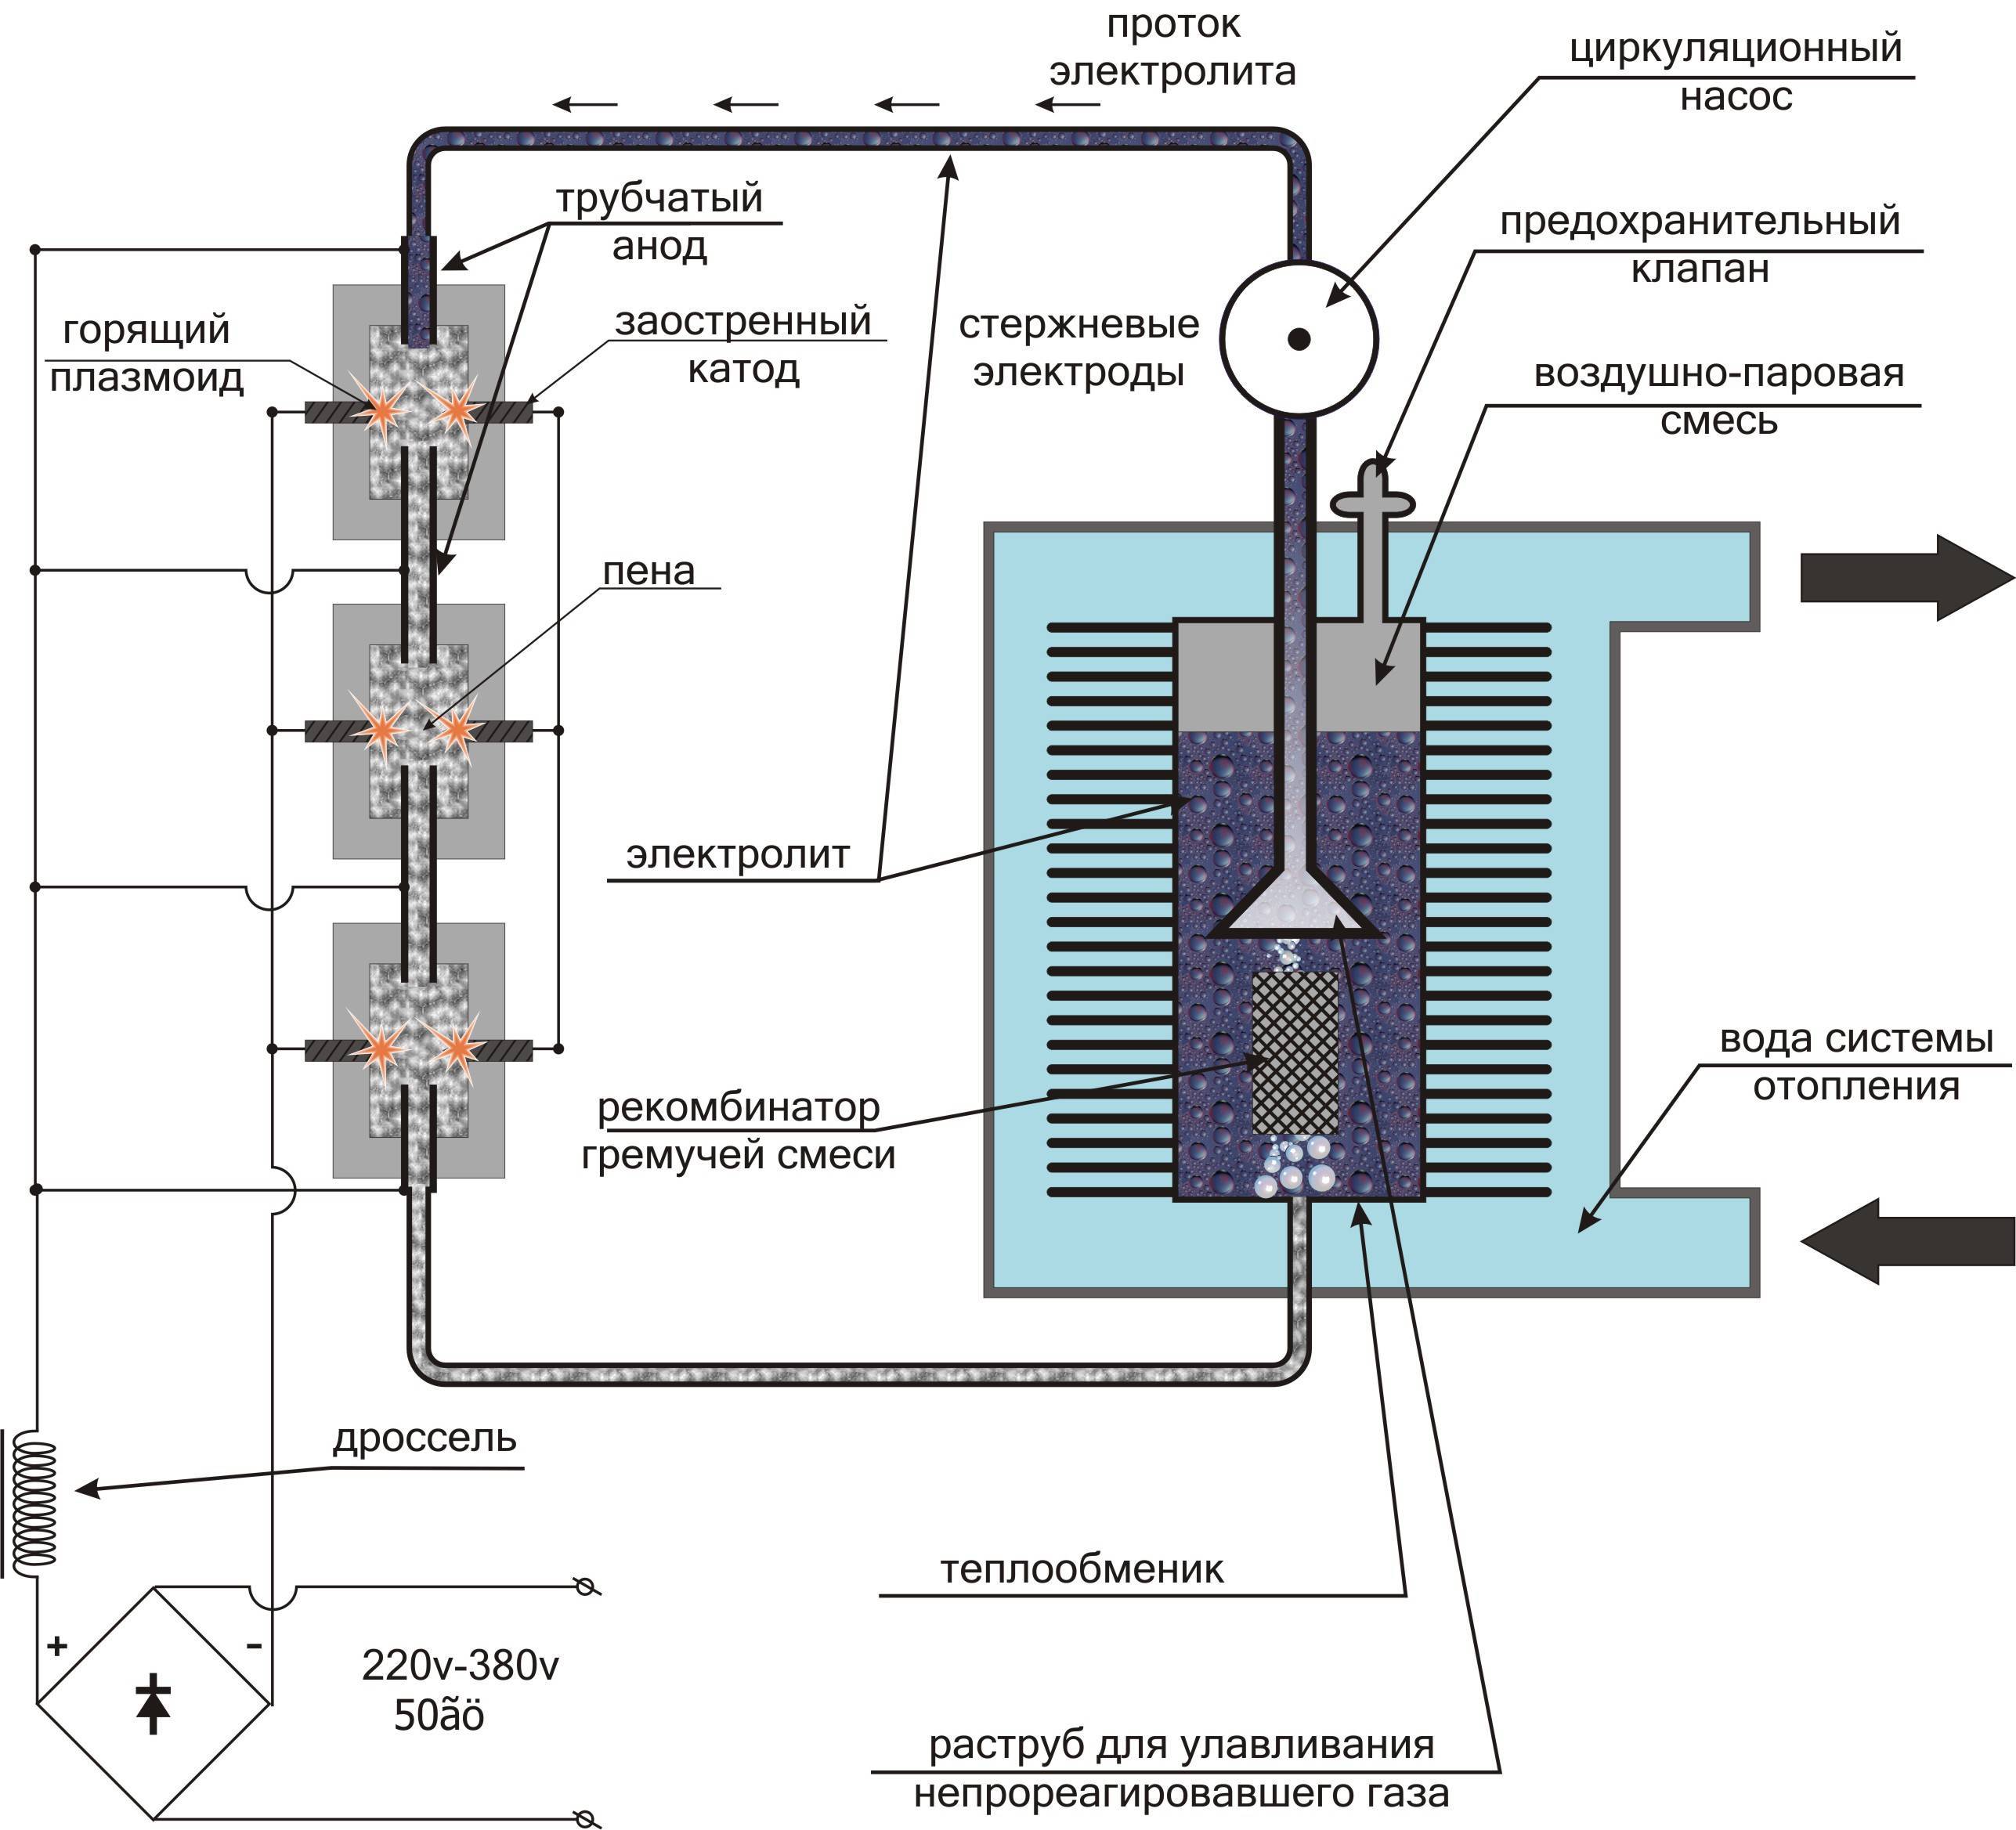 Водородный генератор: конструкция, изготовление электролизера своими руками для автомобиля и дома